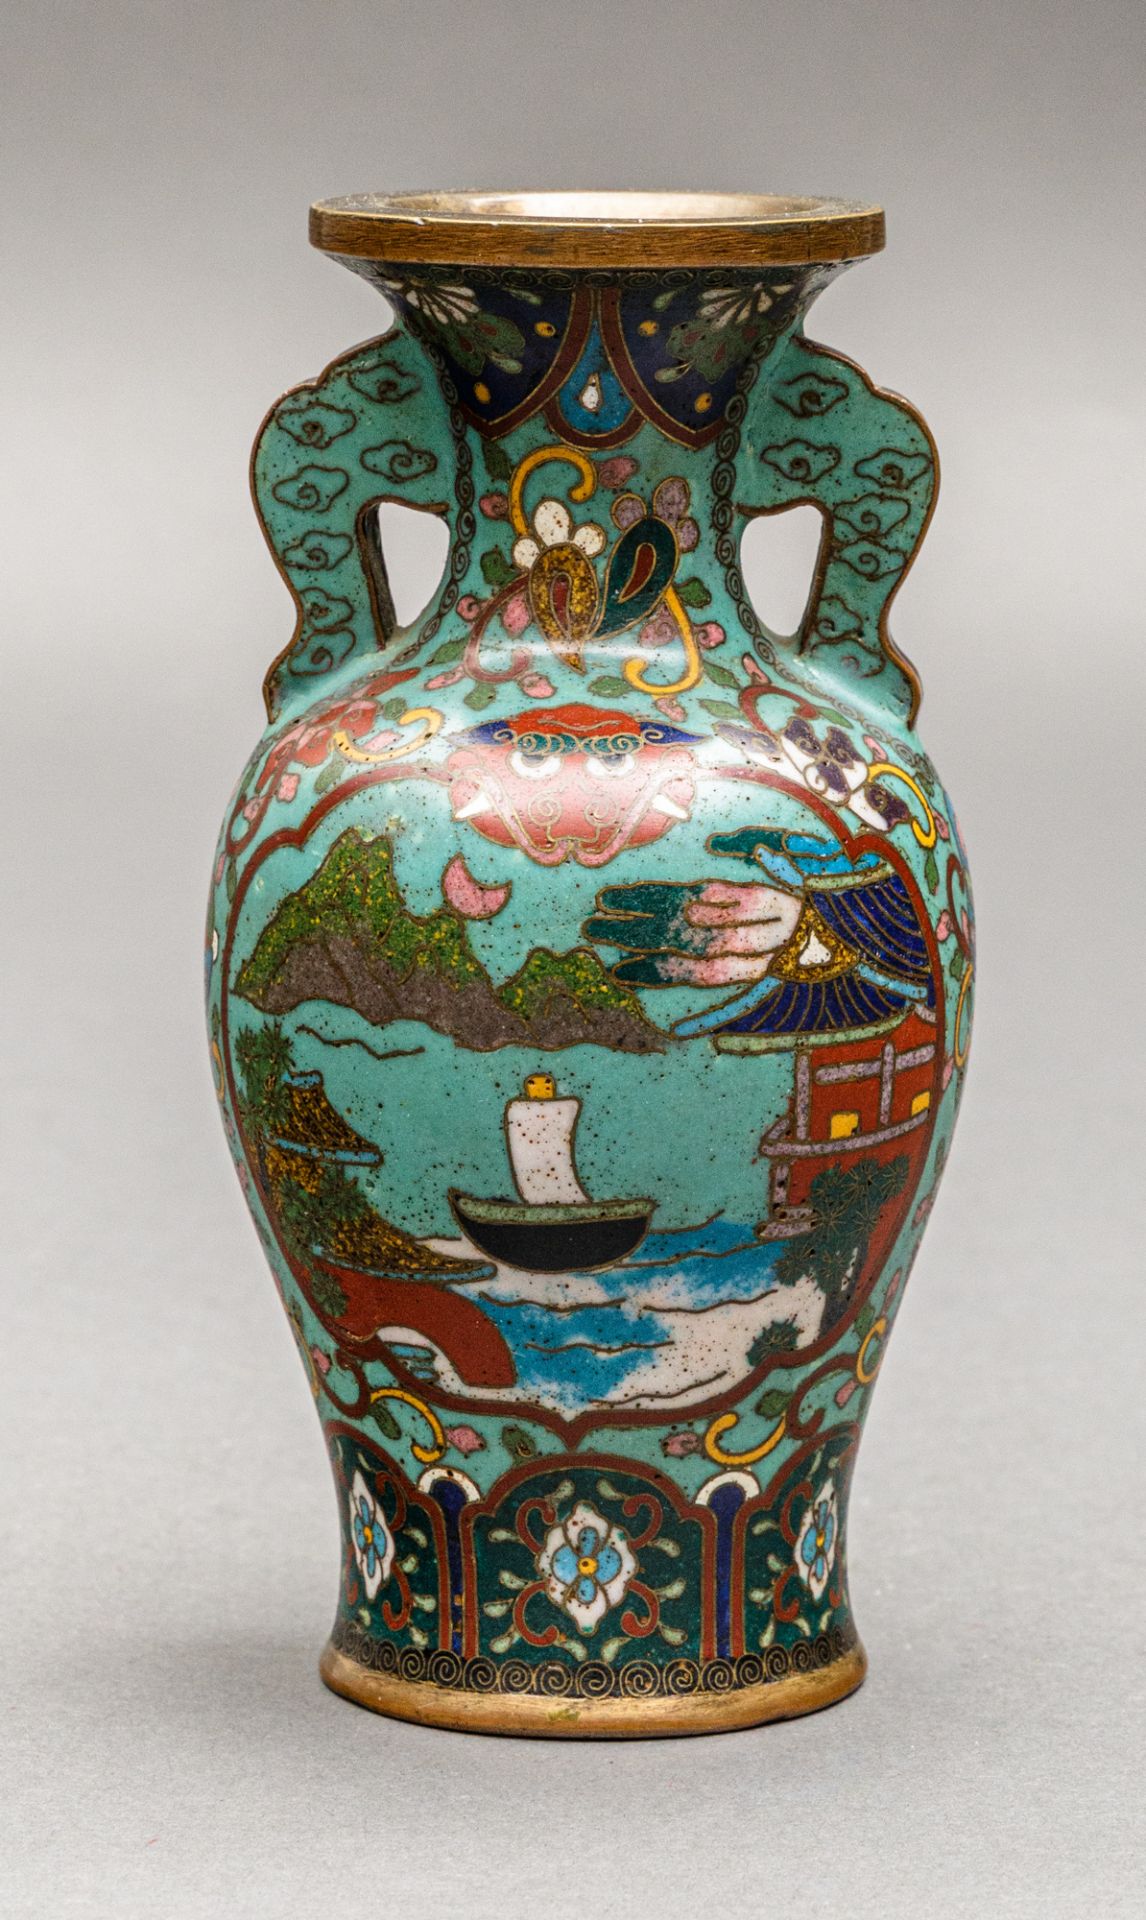 Japanische Cloisonné-Vase im chinesischen Stil, Meiji-Zeit (1868-1912) - Bild 3 aus 6